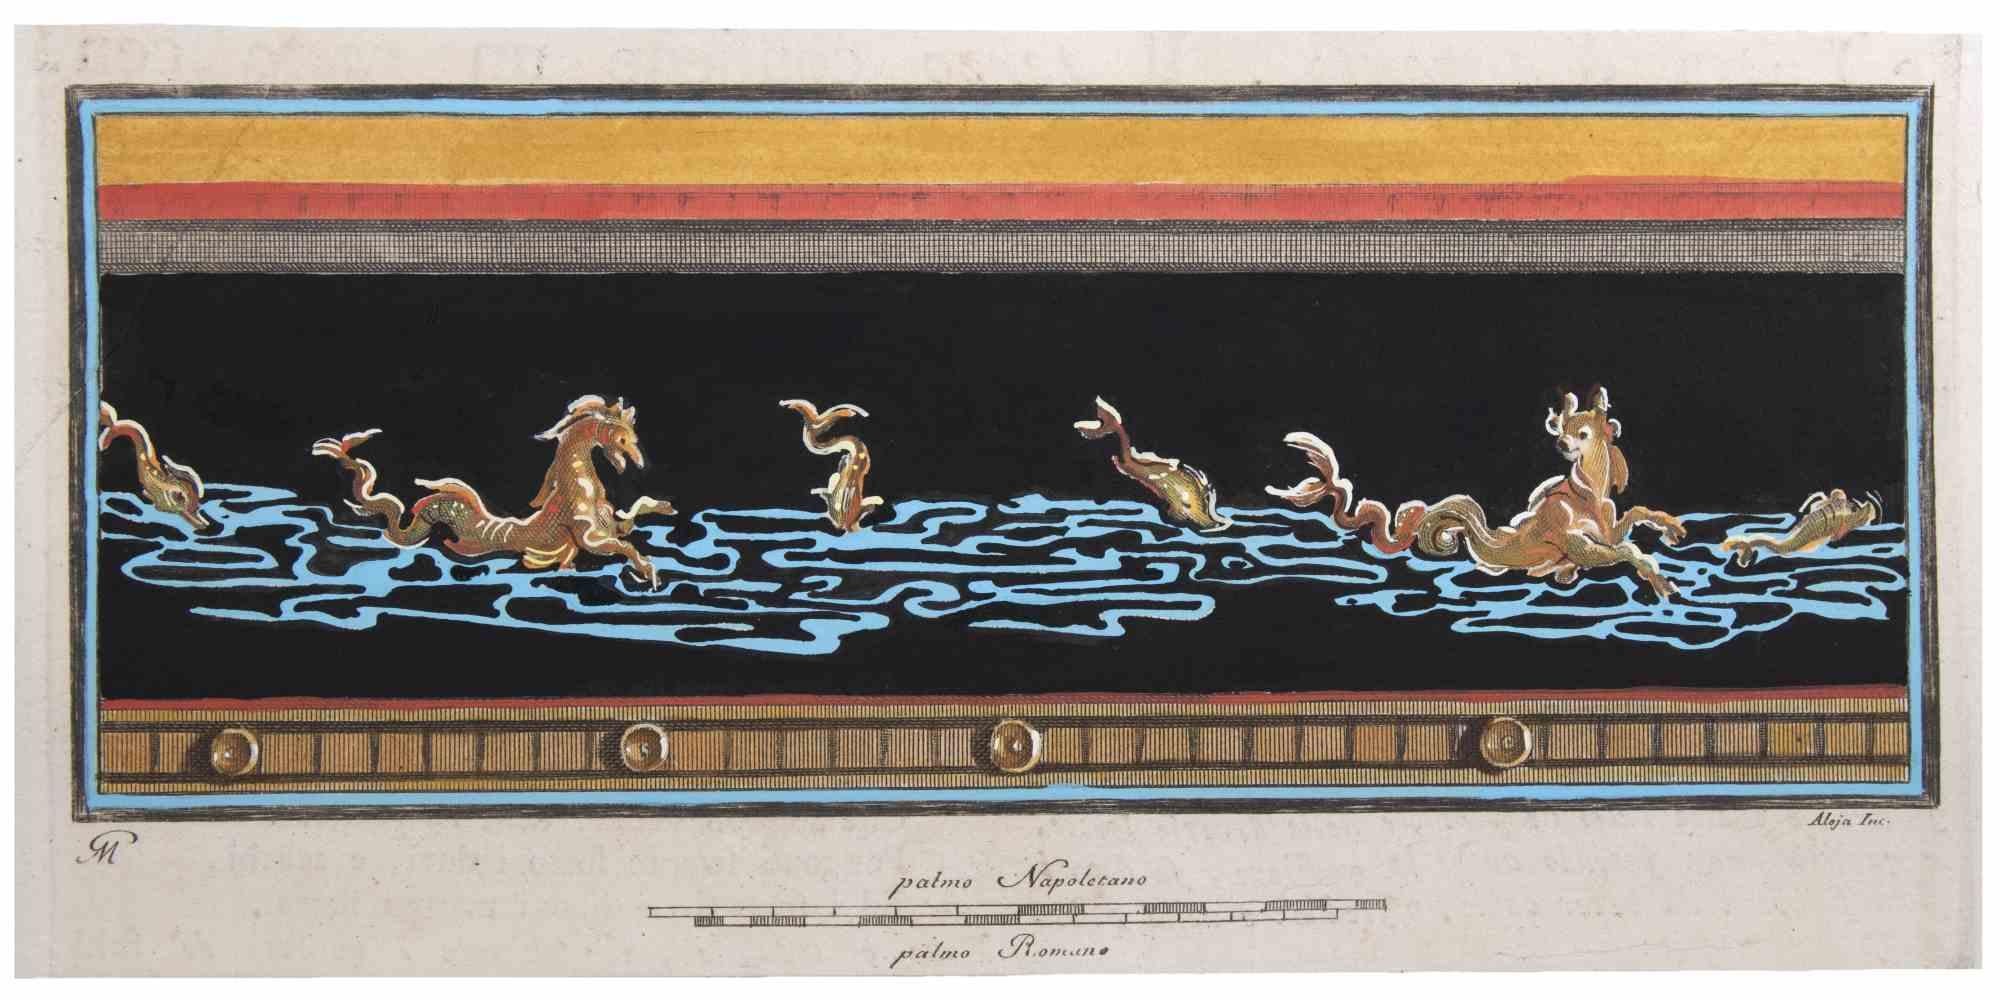 L'hippocampe est une gravure réalisée par Giovanni Morghen, au XVIIIe siècle. 

Aquarelle à la main d'après.

12x23 cm.

Bonnes conditions.

 

Giovanni Morghen ( 1721- après 1789) , avec Francesco La Vega, Camillo Paderni, Nicola Vanni et d'autres,